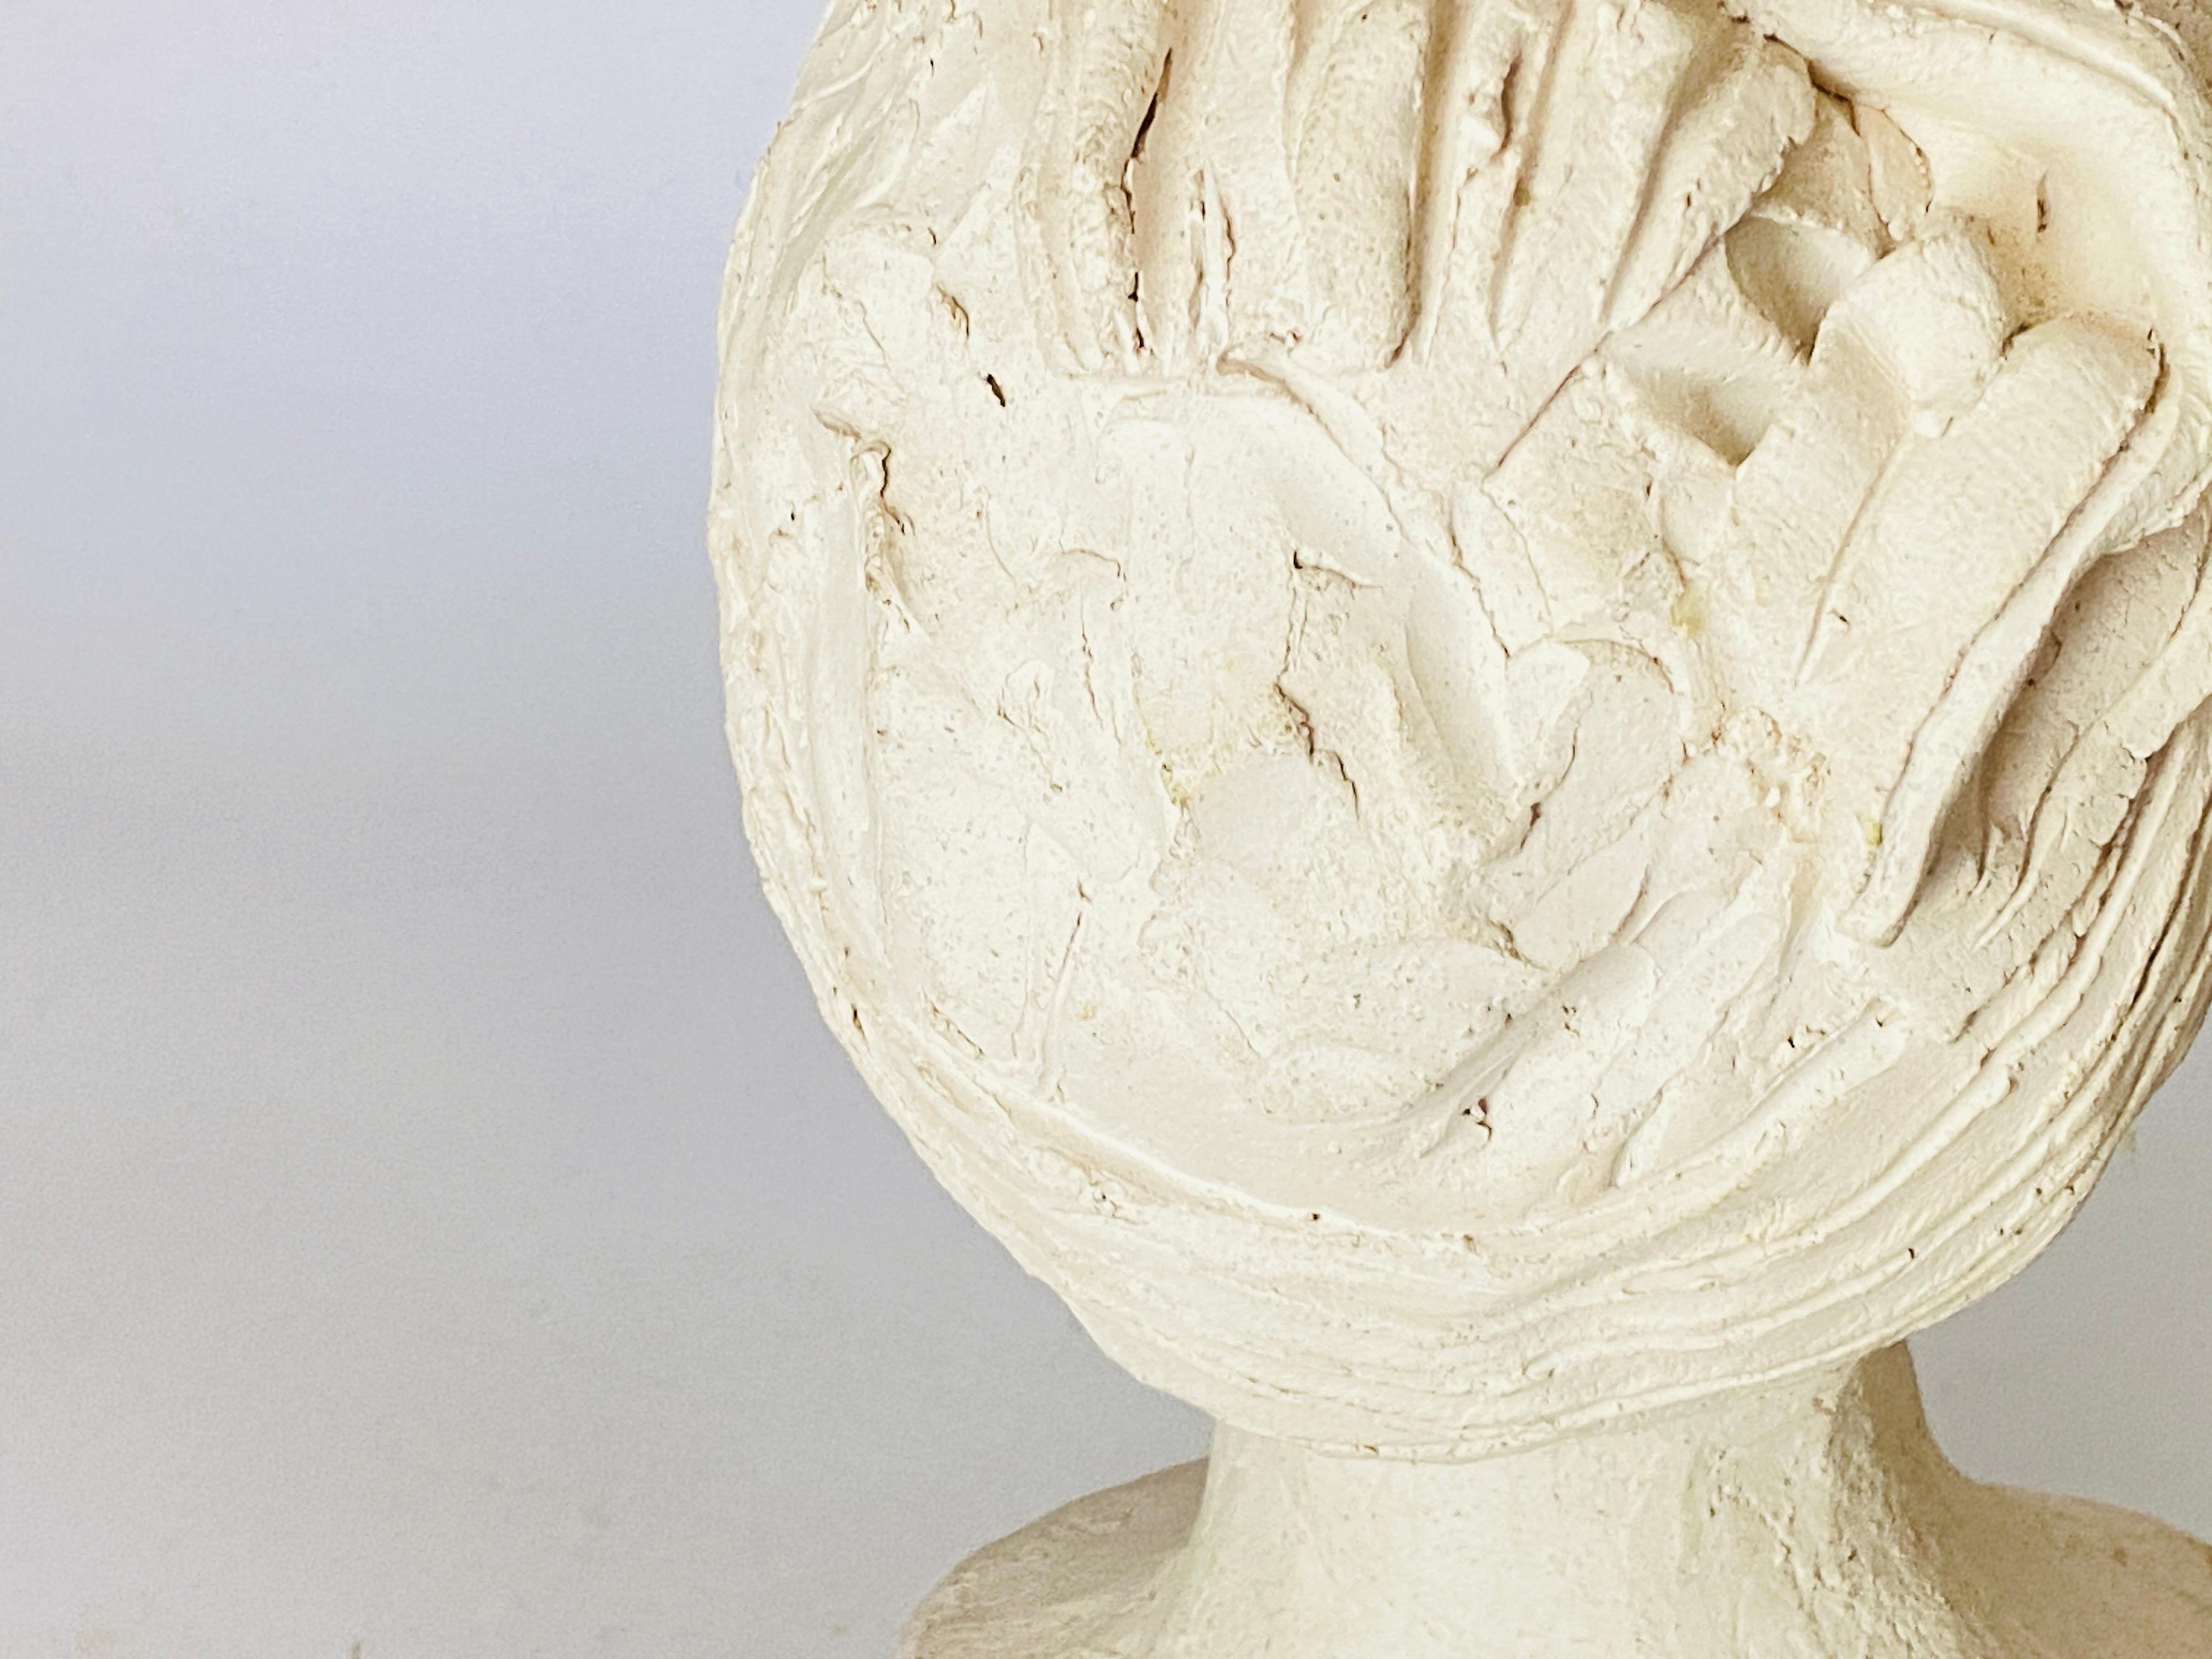 Ce buste de femme est en plâtre. Il s'agit d'une sculpture Art déco, réalisée vers 1930, en France.
Dans une couleur blanche. 